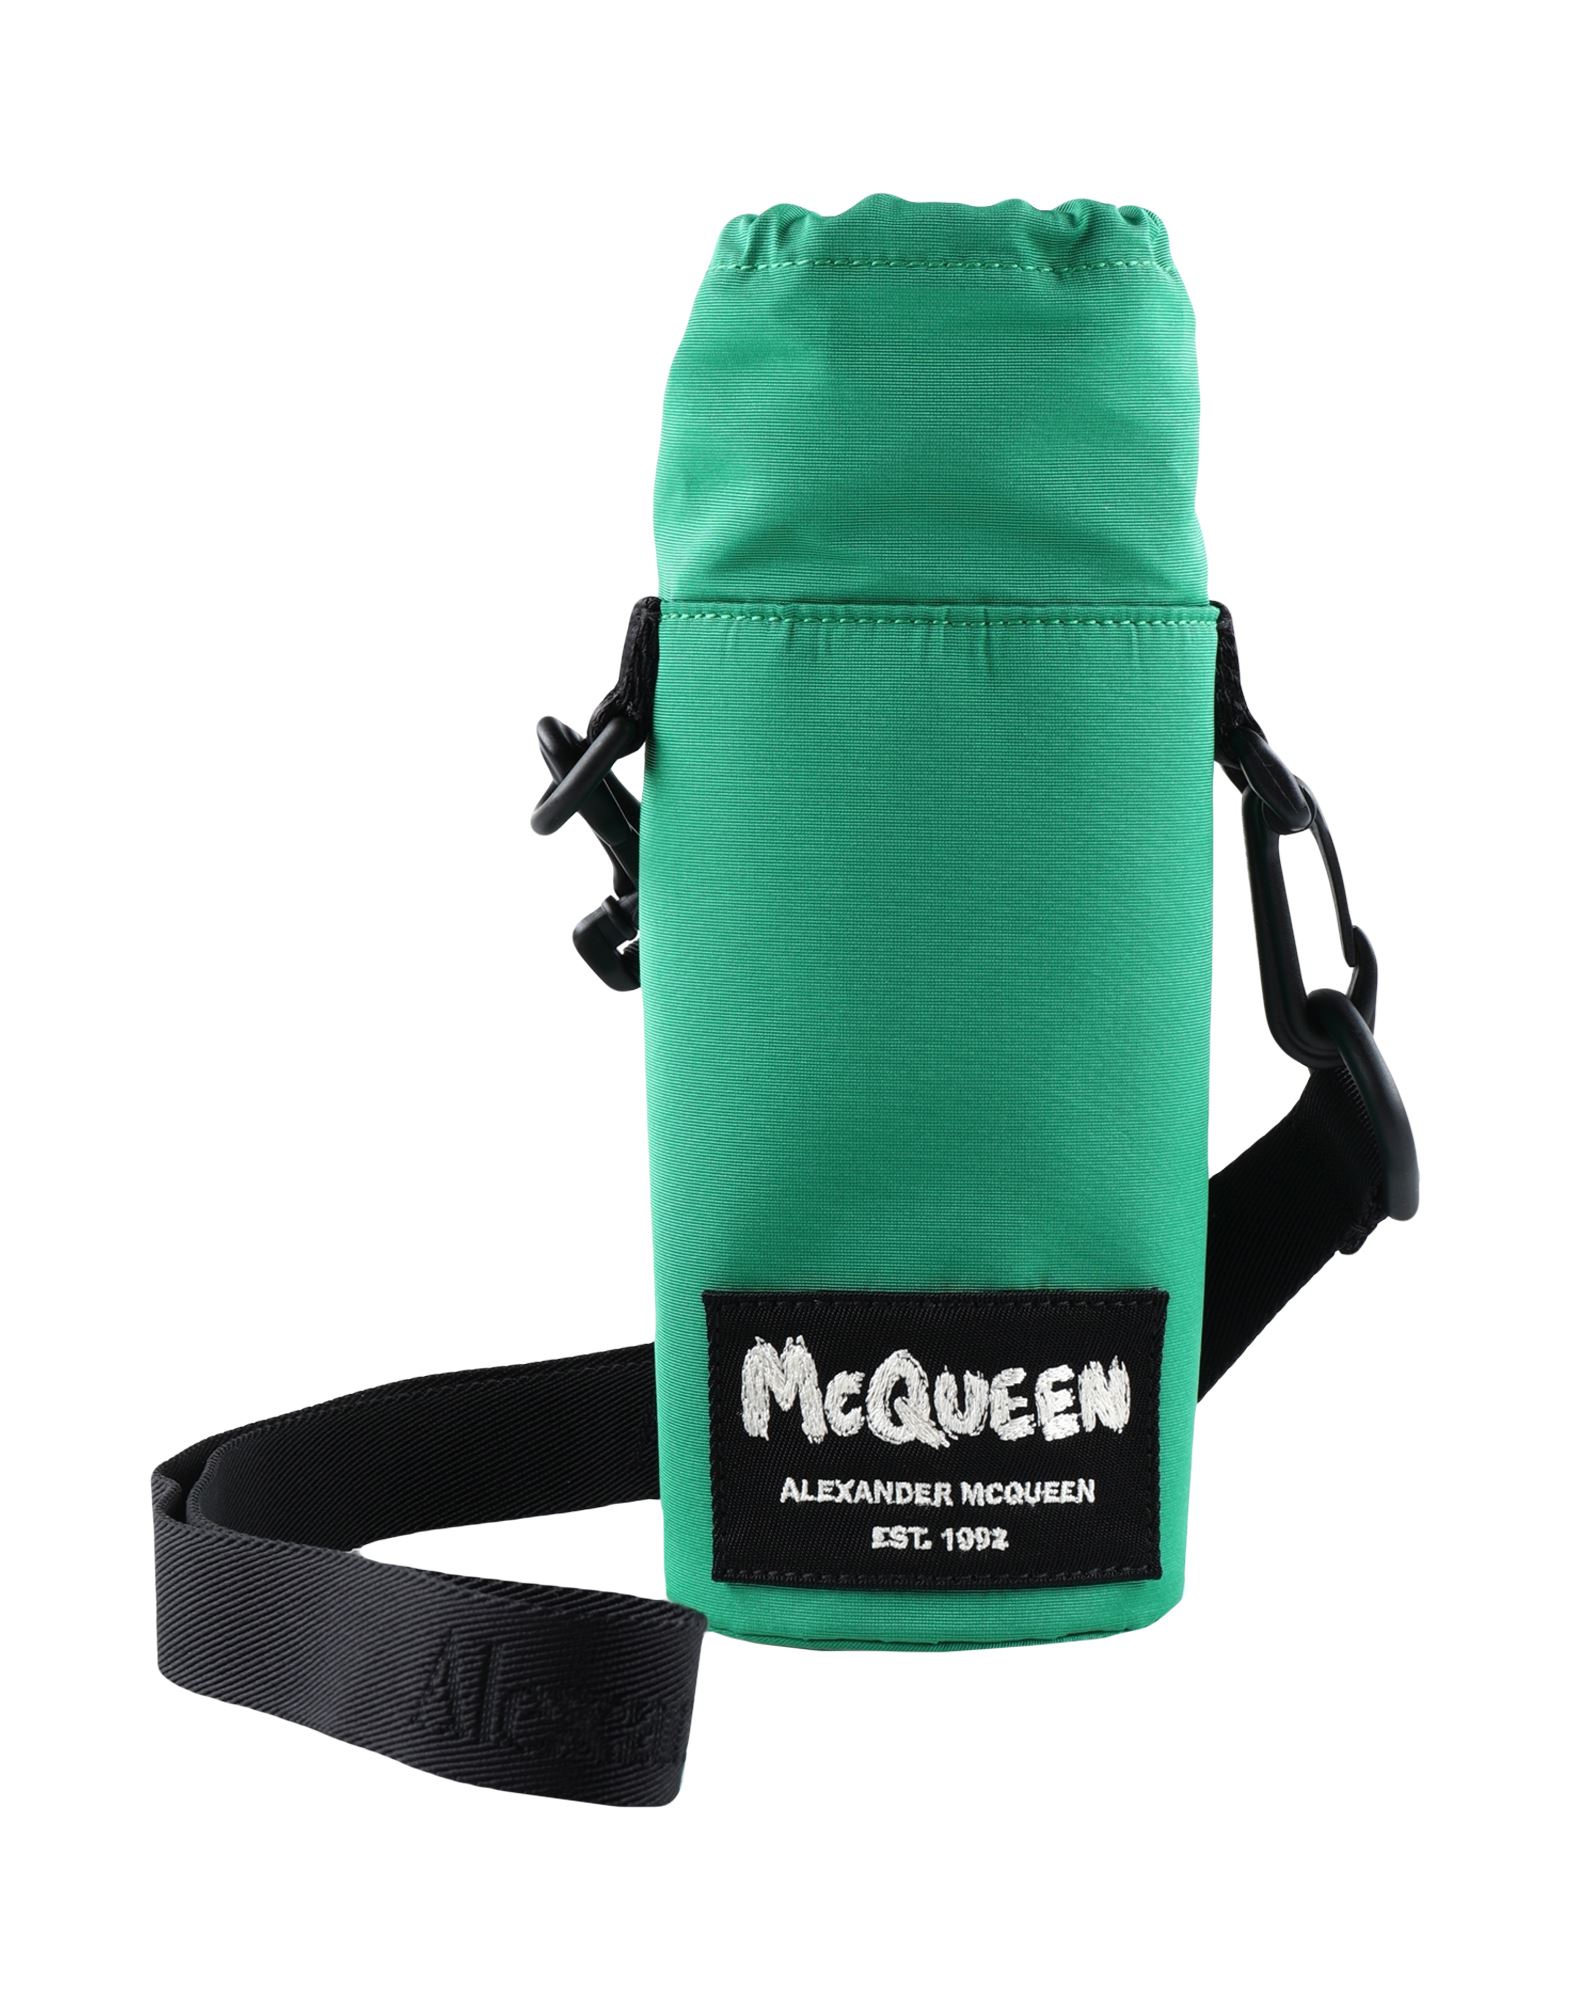 Alexander Mcqueen Sports Accessories In Green